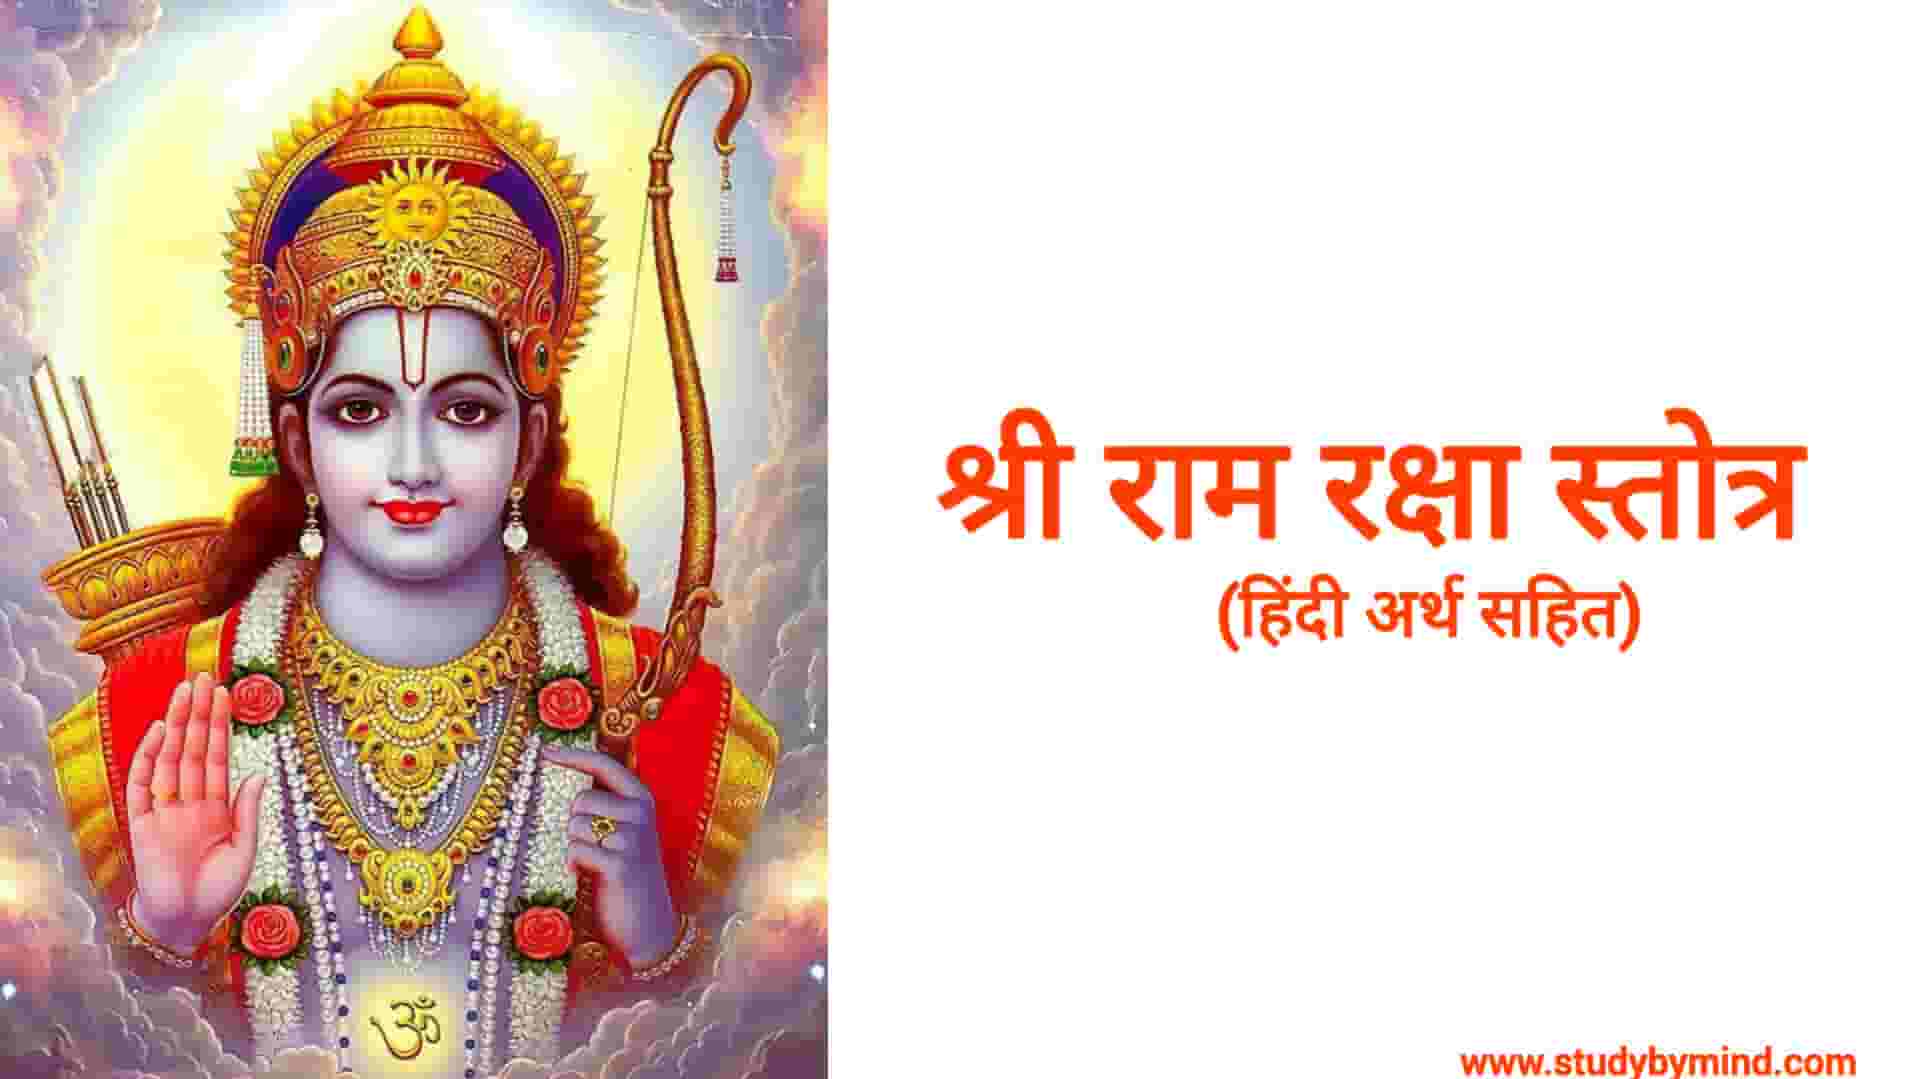 You are currently viewing रामरक्षा स्तोत्रम इन हिंदी Ram raksha stotra in hindi (अर्थ सहित हिंदी में)